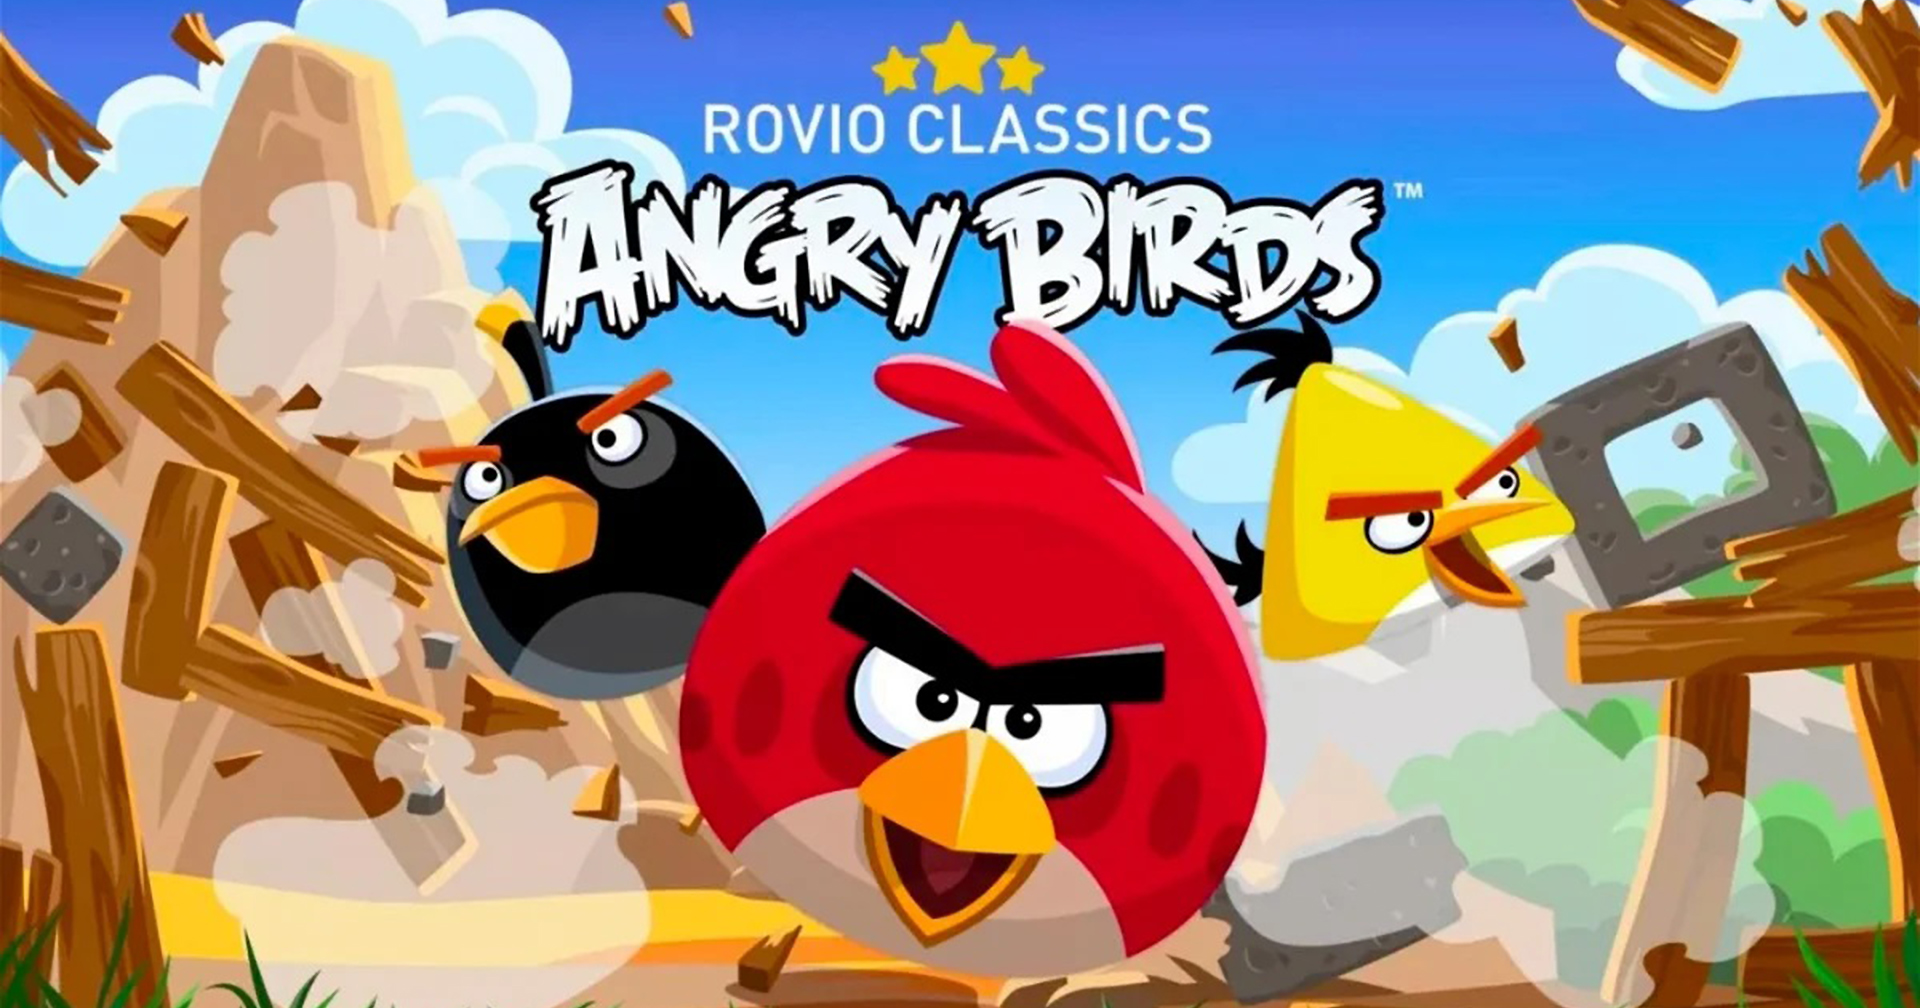 หมดยุค: เกม Angry Birds เวอร์ชันคลาสสิก จะถูกถอดจาก Play Store ในวันที่ 23 ก.พ. นี้